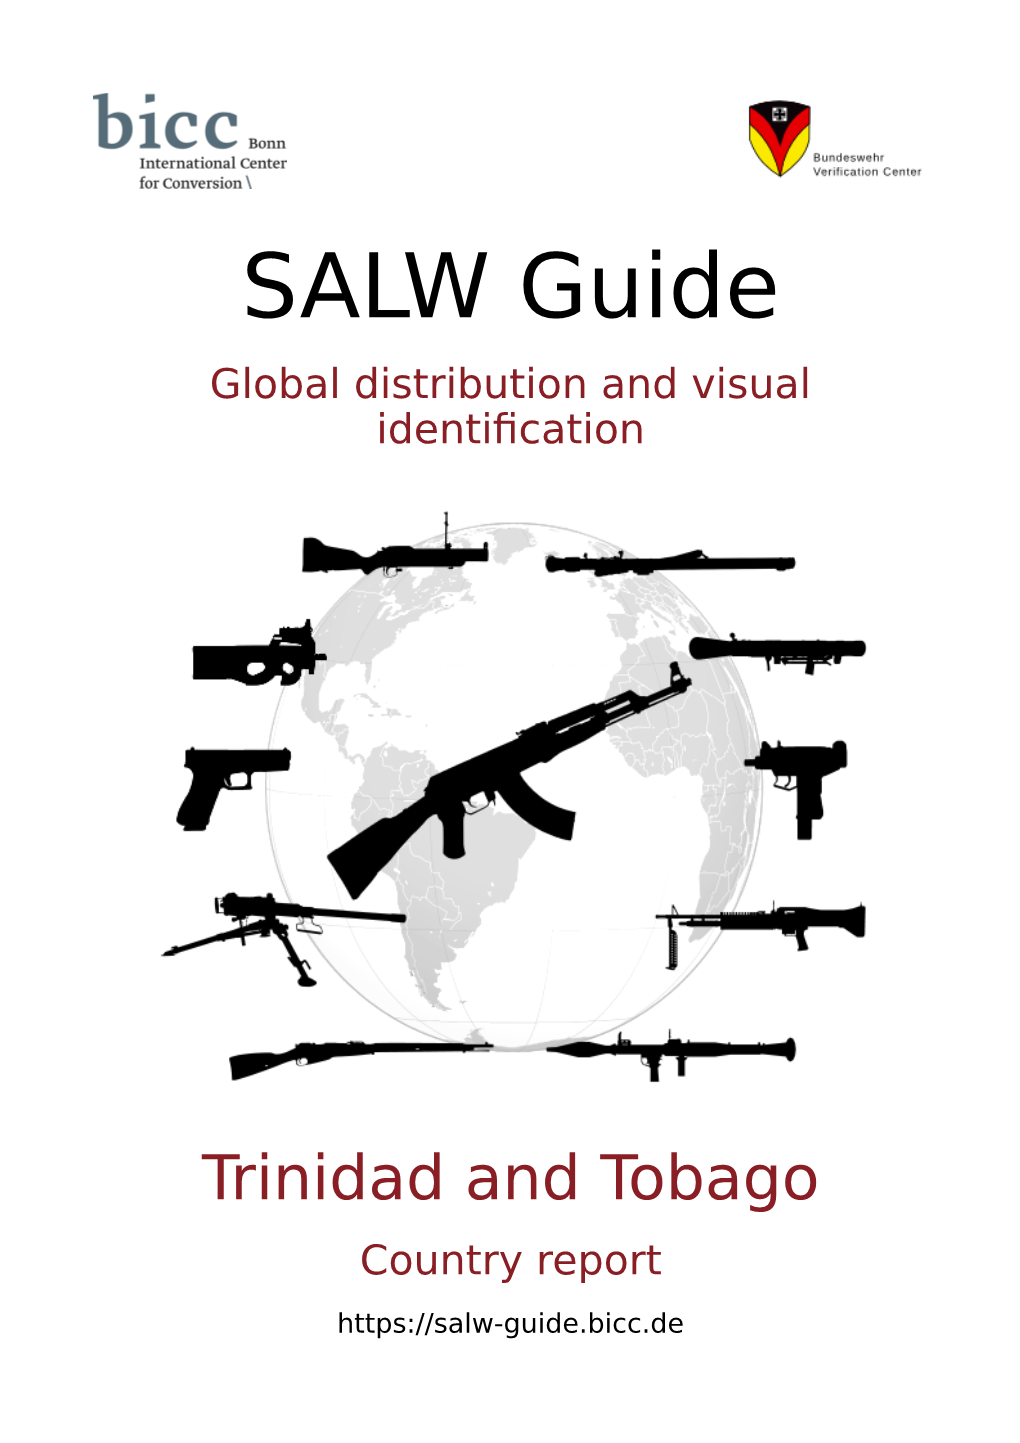 Trinidad and Tobago Country Report